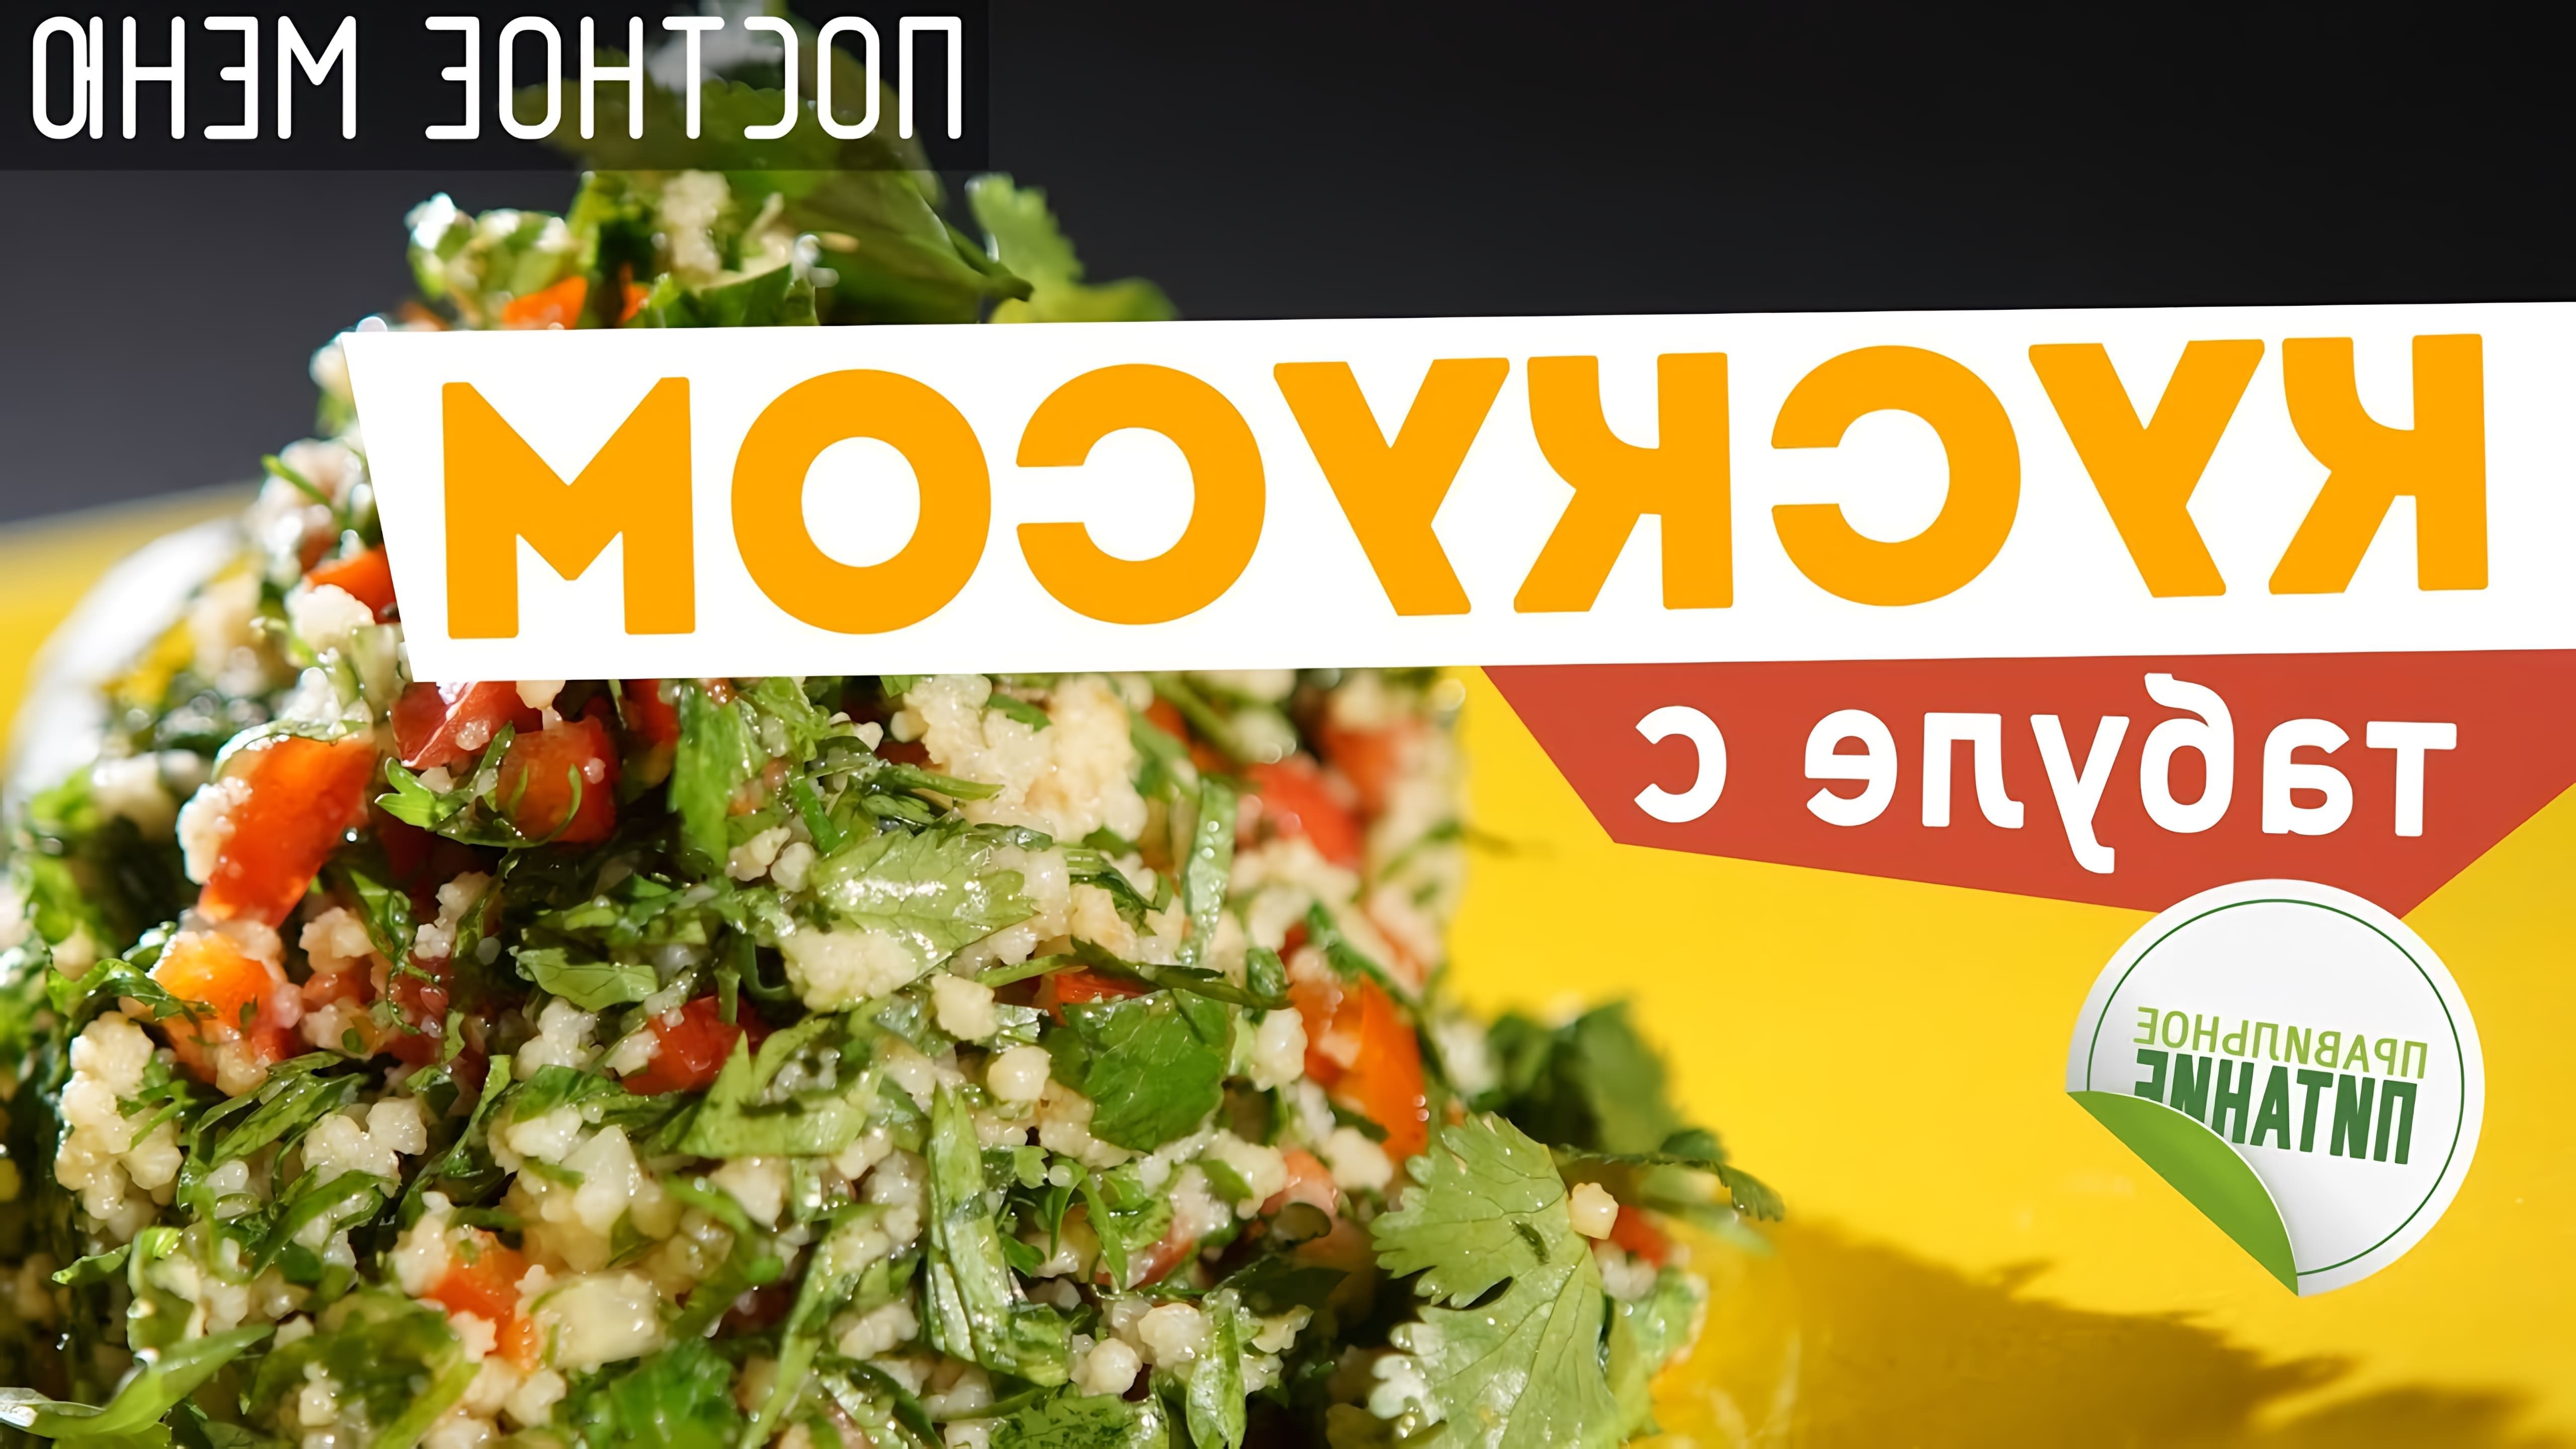 В данном видео шеф-повар Кирилл Боликов готовит блюдо ливанской кухни - салат "Табуле" с кускусом и свежими овощами